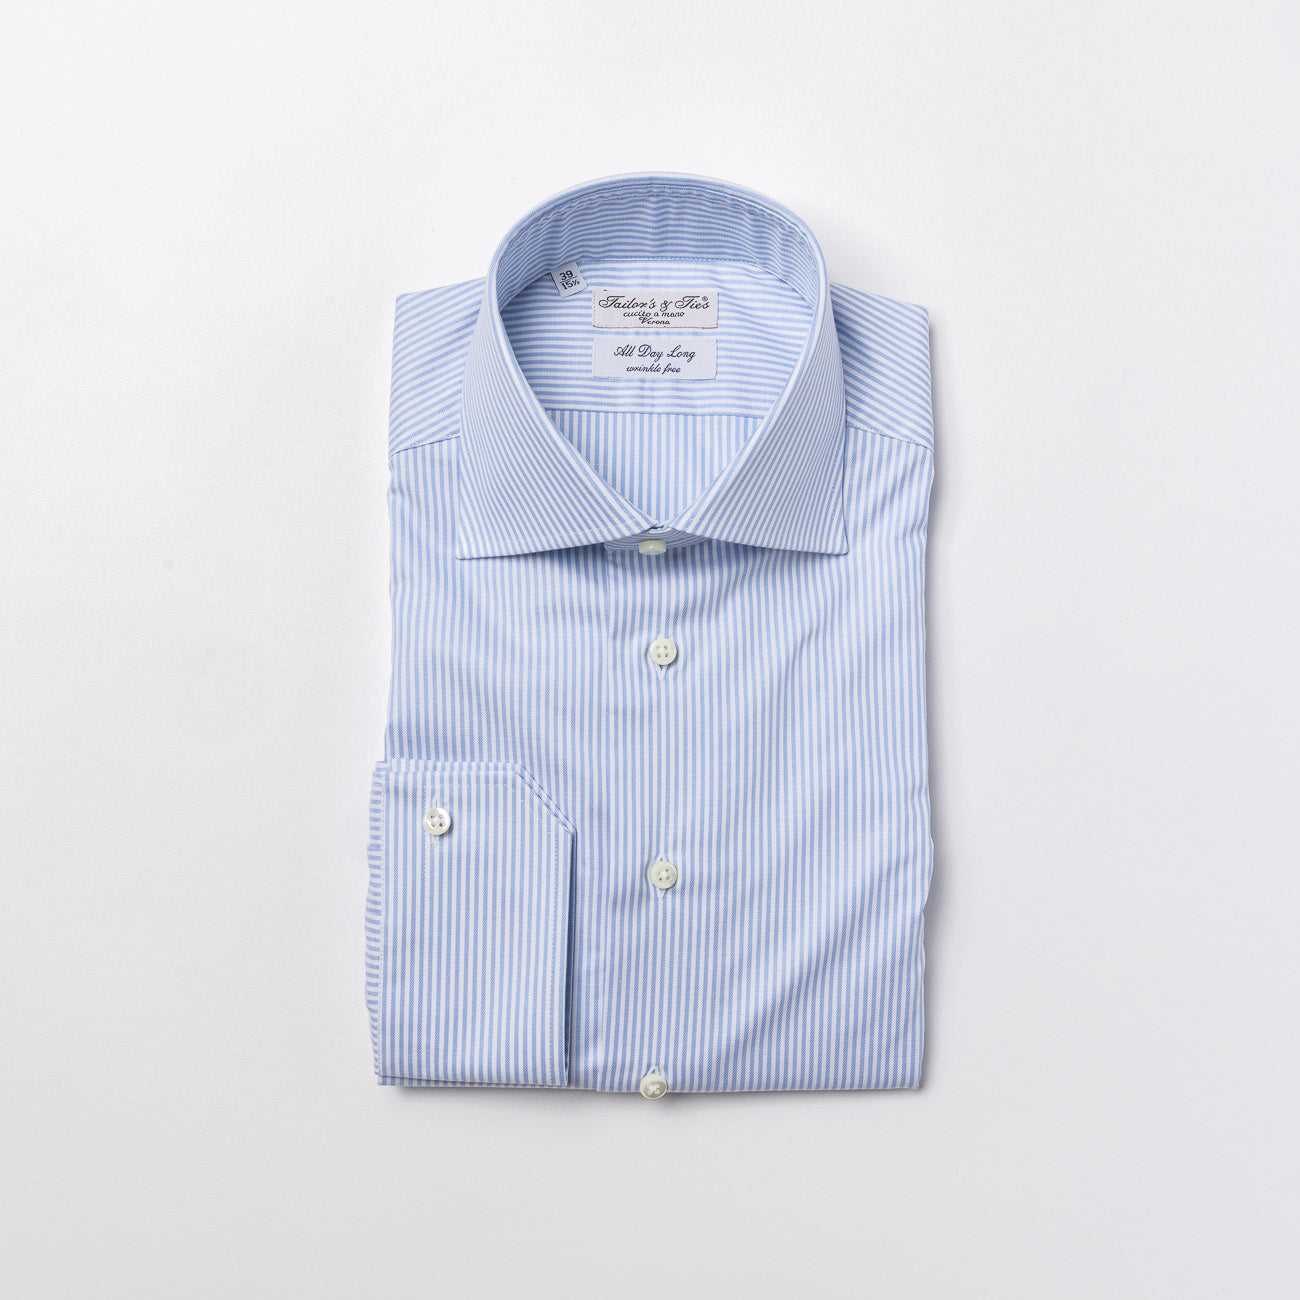 Camicia classica Tailor's & Ties in cotone a righe bianco e azzurro